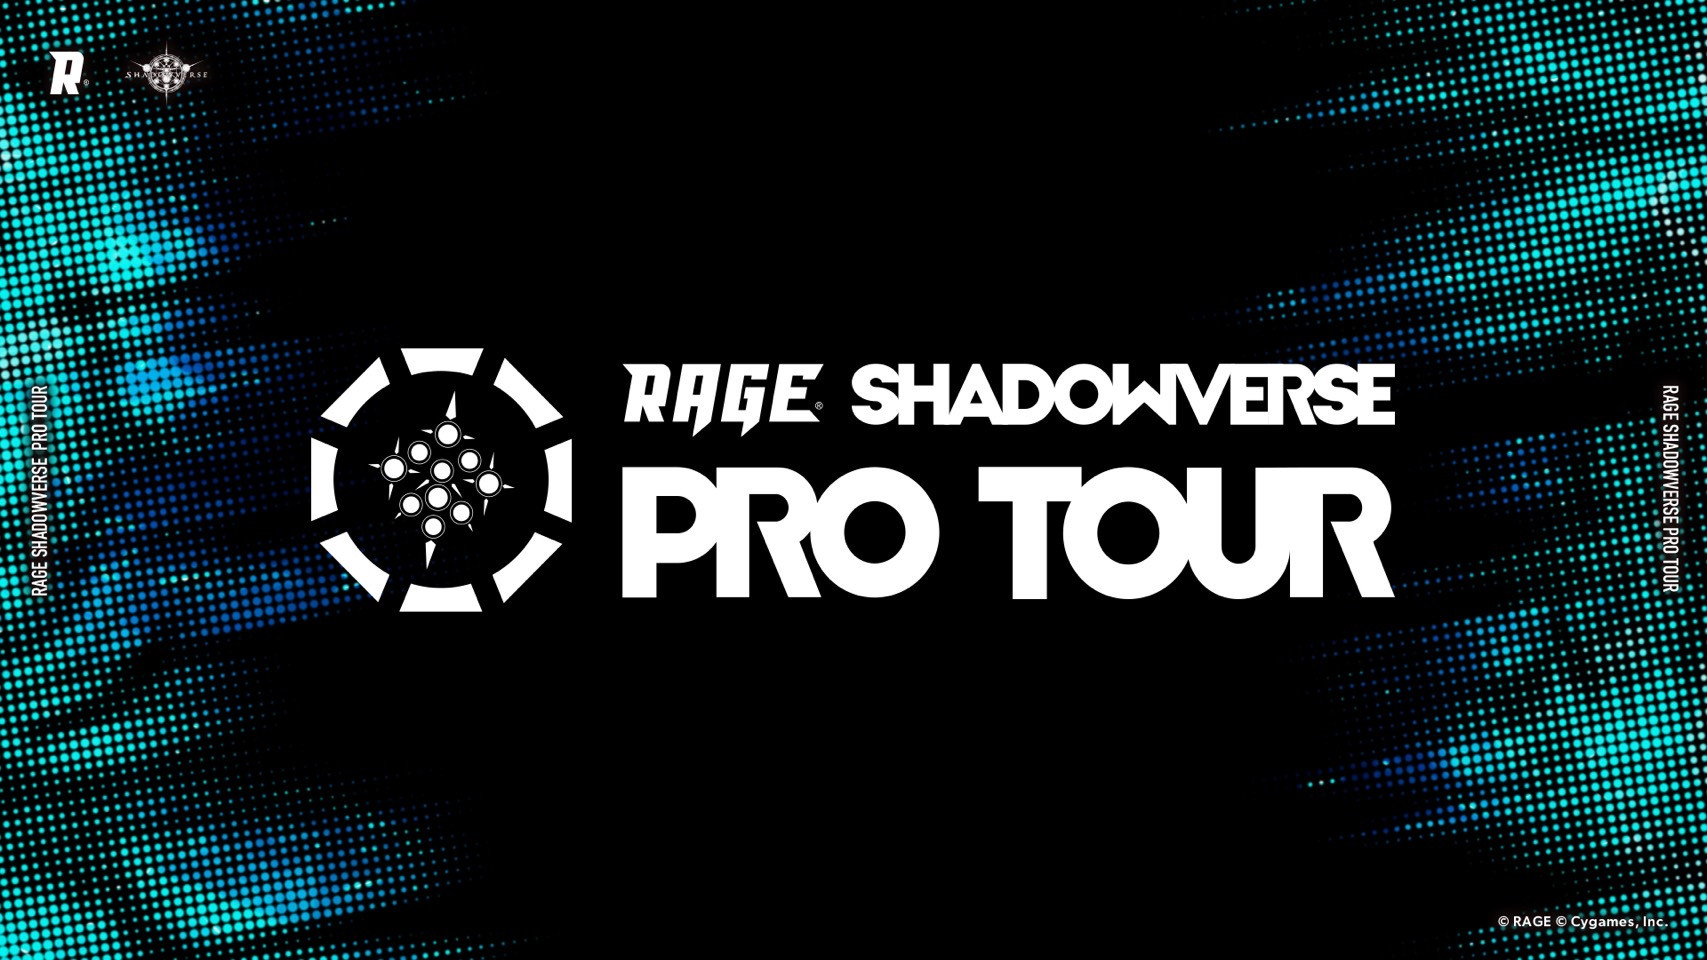 【大会情報】RAGE SHADOWVERSE PRO TOUR 22-23 3rd Season 本戦【2022年9月17日、18日】